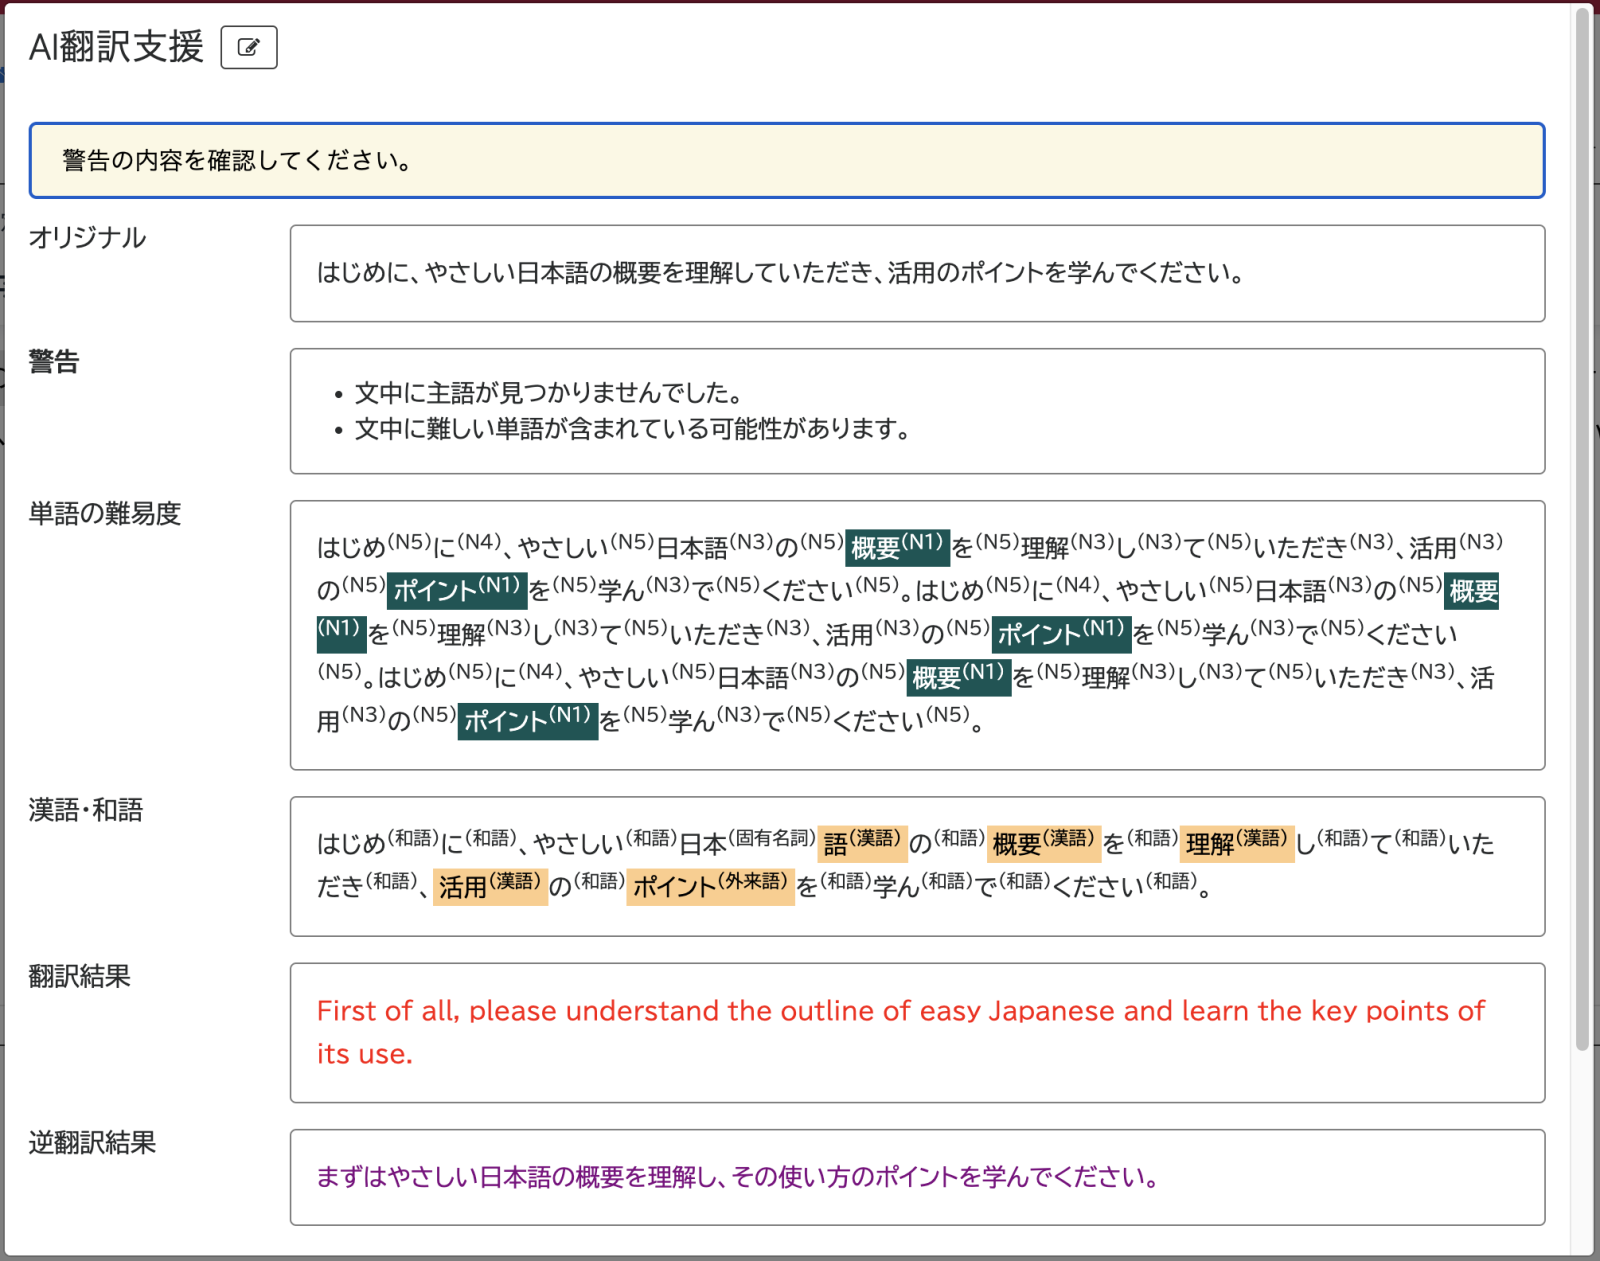 例文に対して単語の難易度、漢語と和語の可視化、翻訳と逆翻訳結果を提示